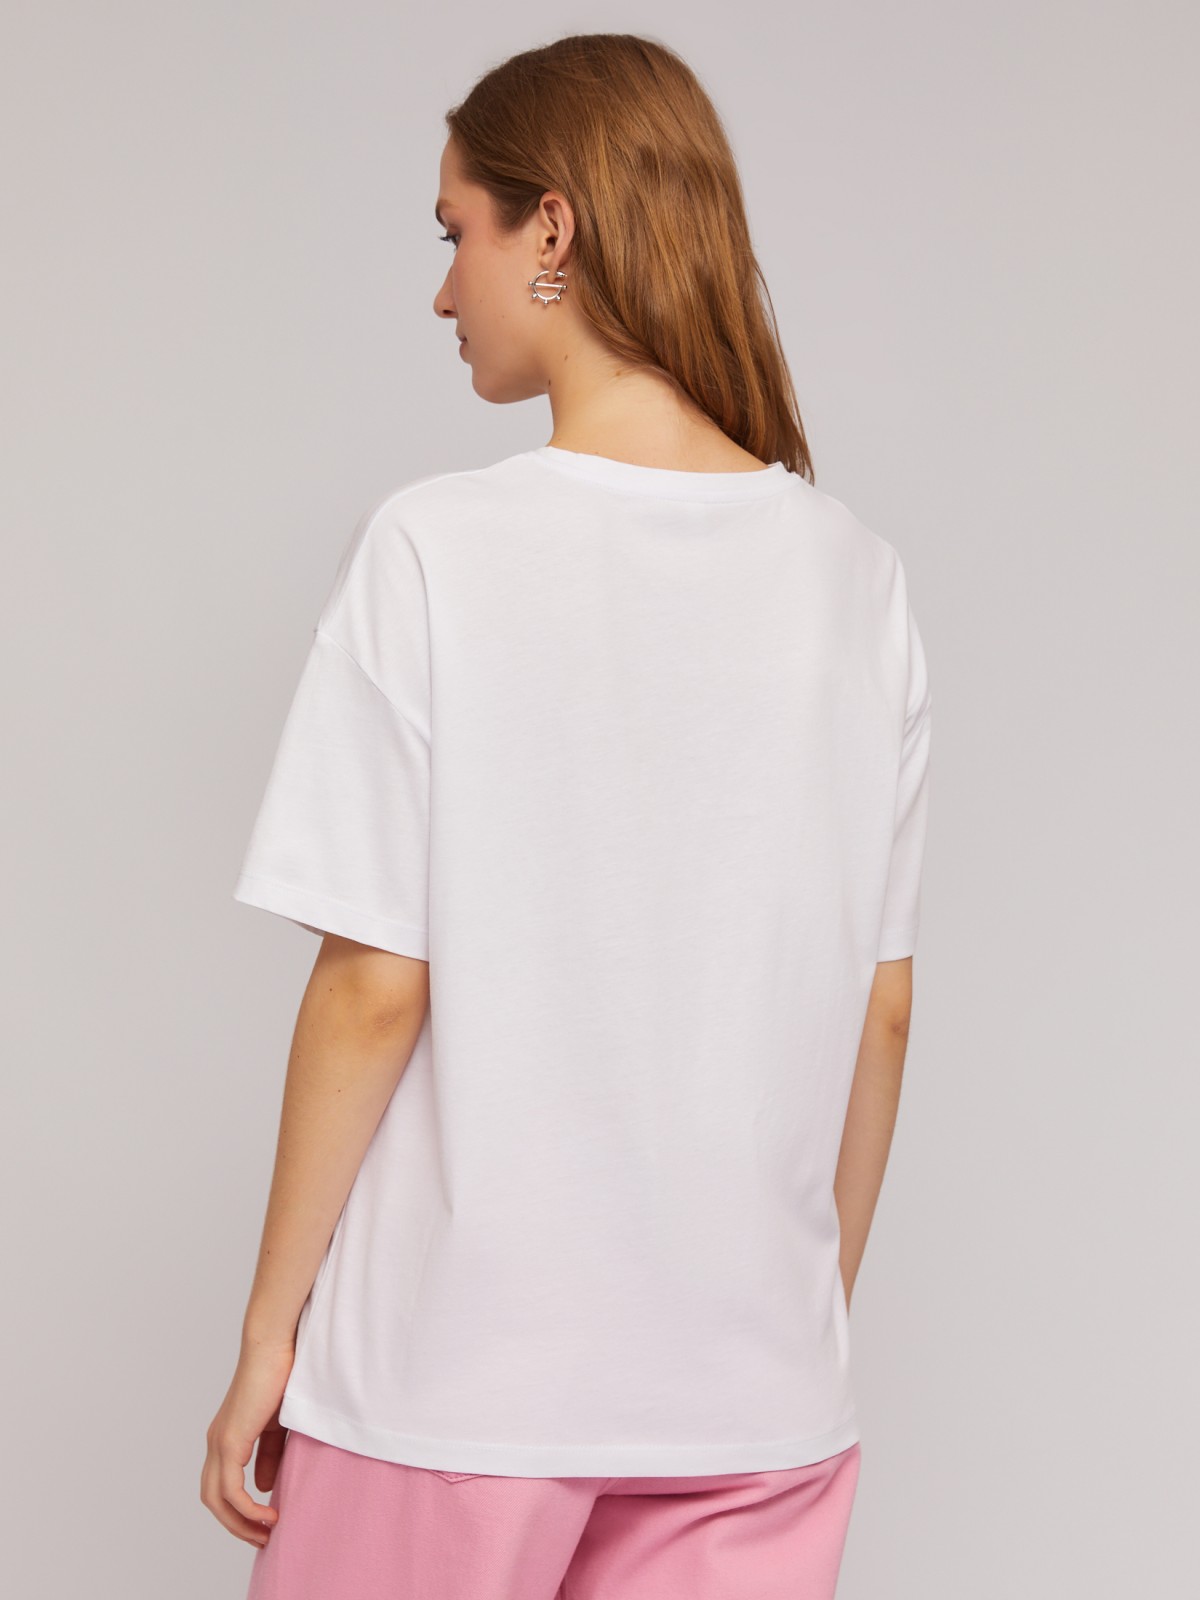 Трикотажная оверсайз футболка из хлопка с принтом zolla N24243292291, цвет молоко, размер XS - фото 6